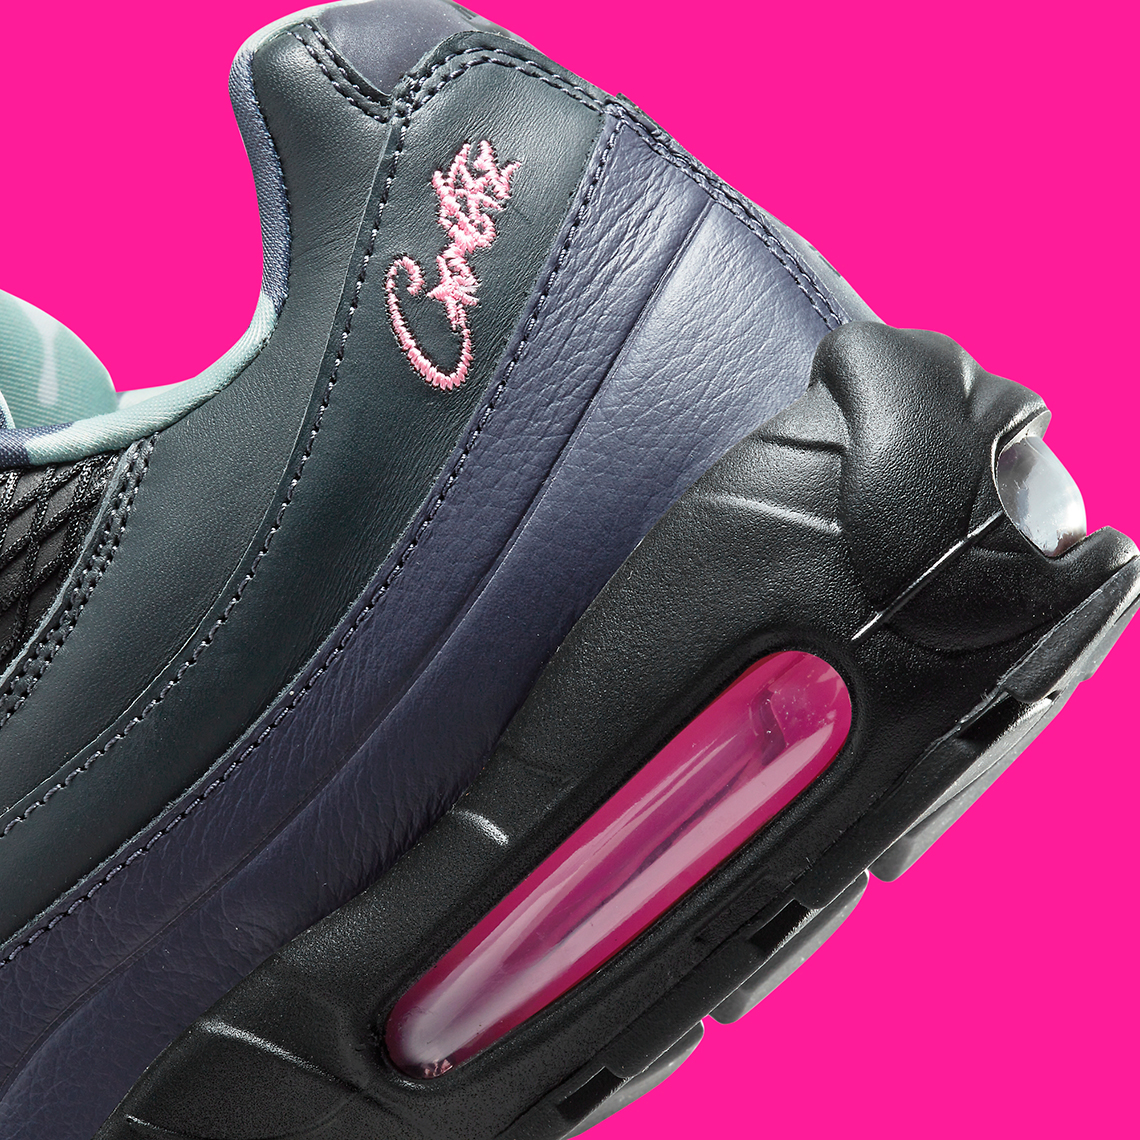 Corteiz Nike Lunettes De Soleil Teintées Maverick 95 Black Pink Camo Fb2709 001 5